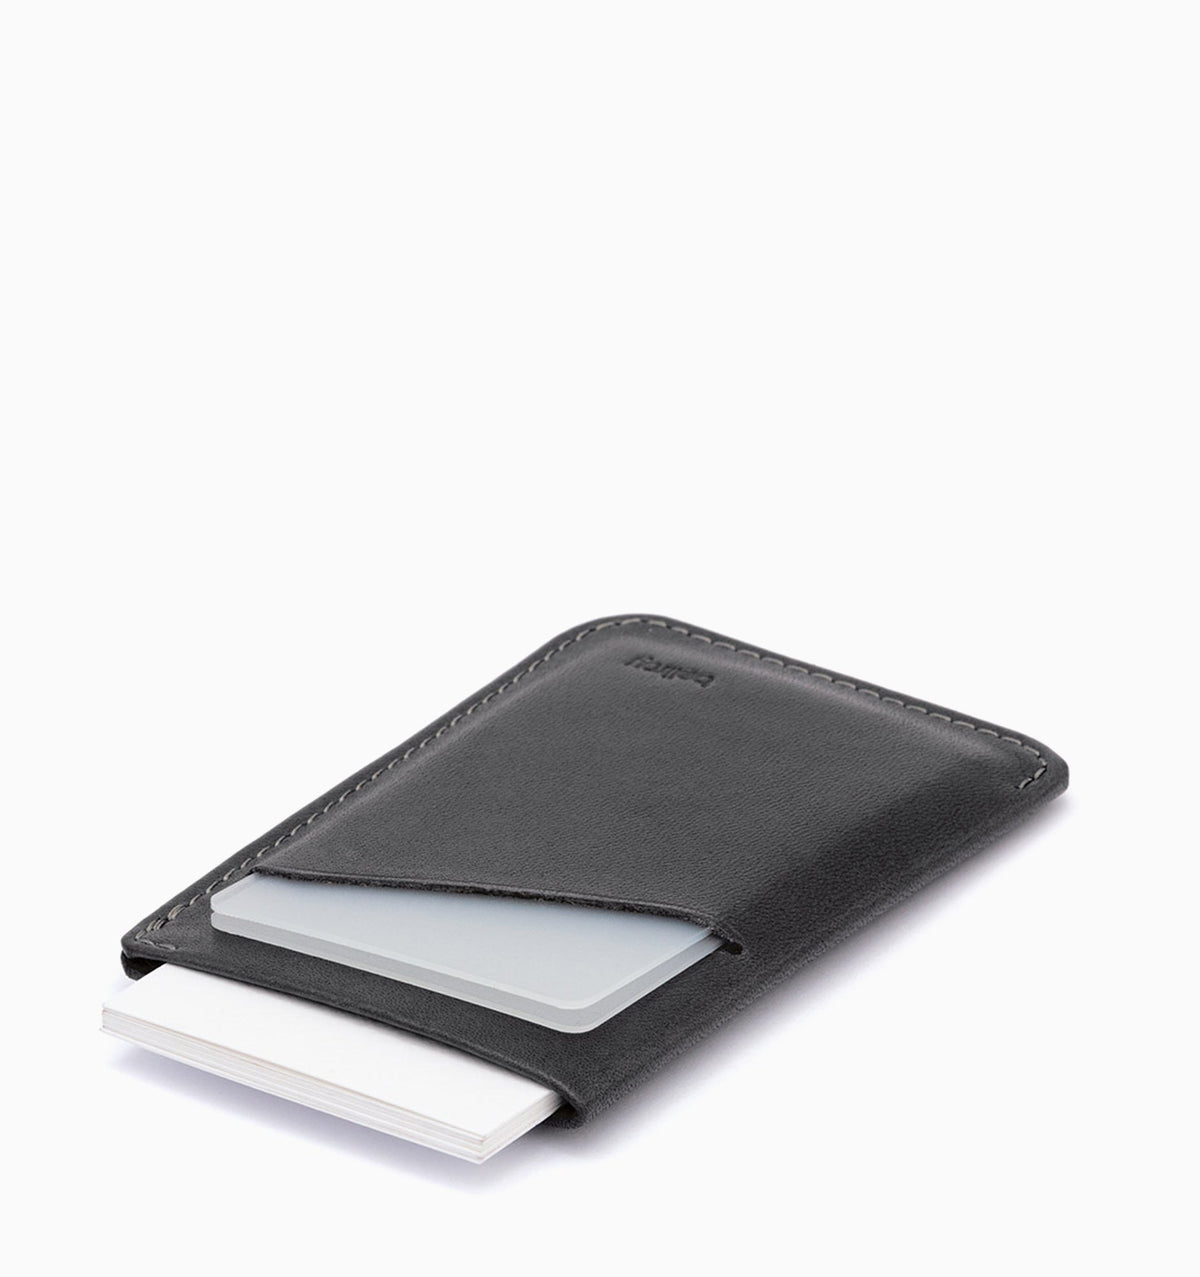 Bellroy Card Sleeve Wallet - Charcoal Cobalt